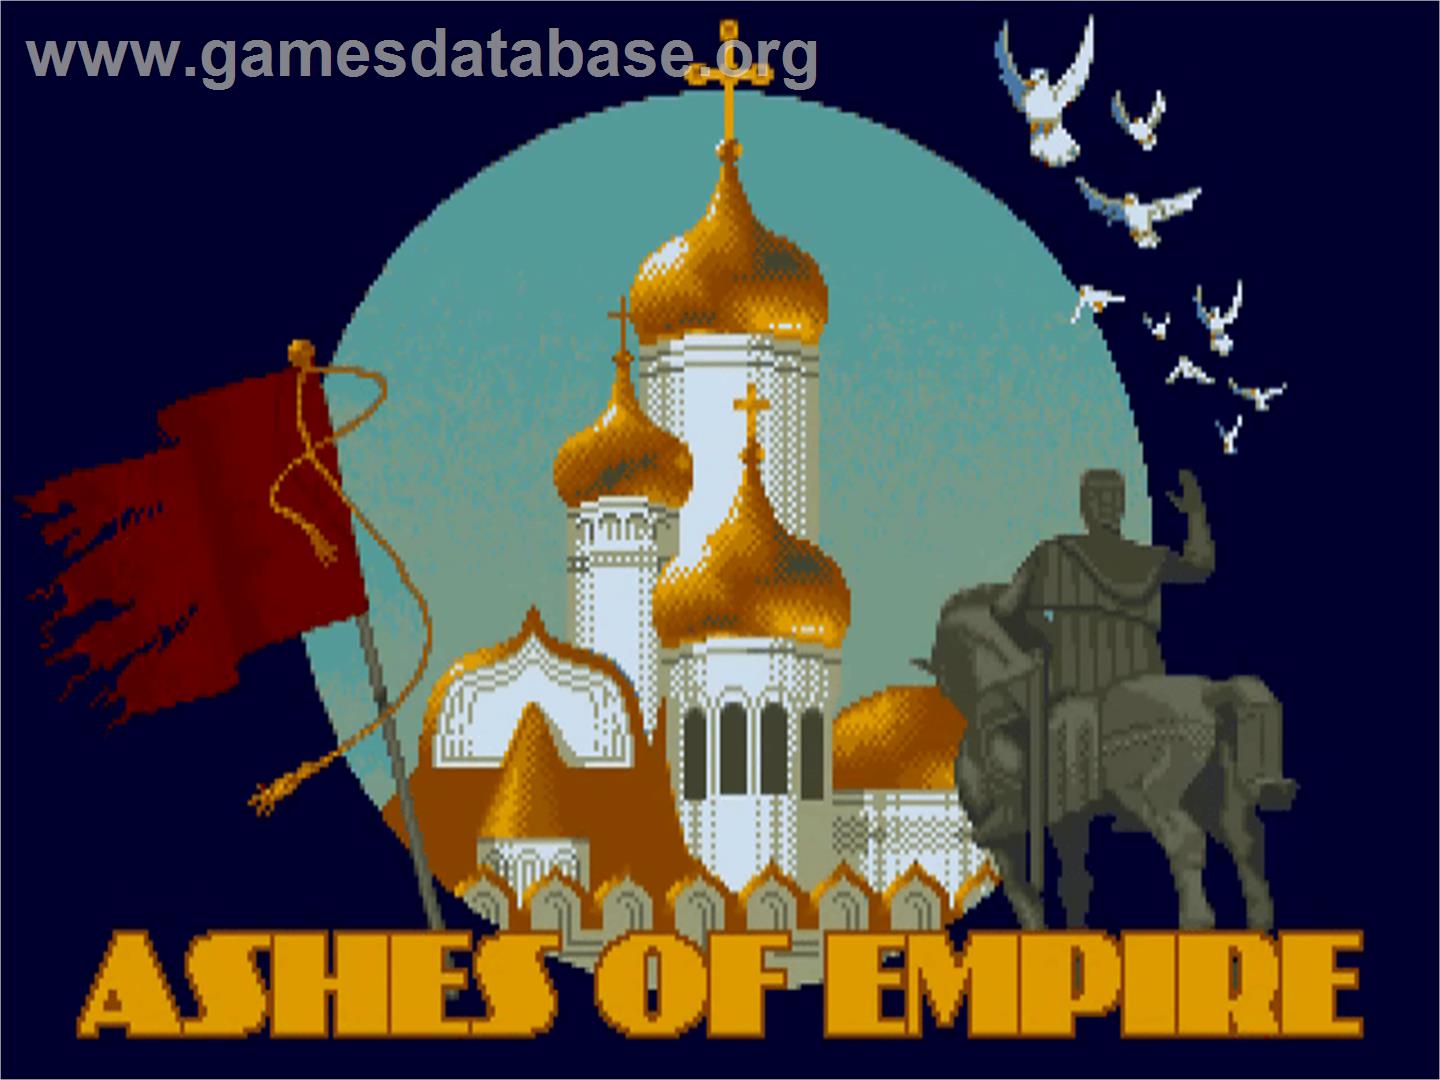 Ashes of Empire - Commodore Amiga - Artwork - Title Screen